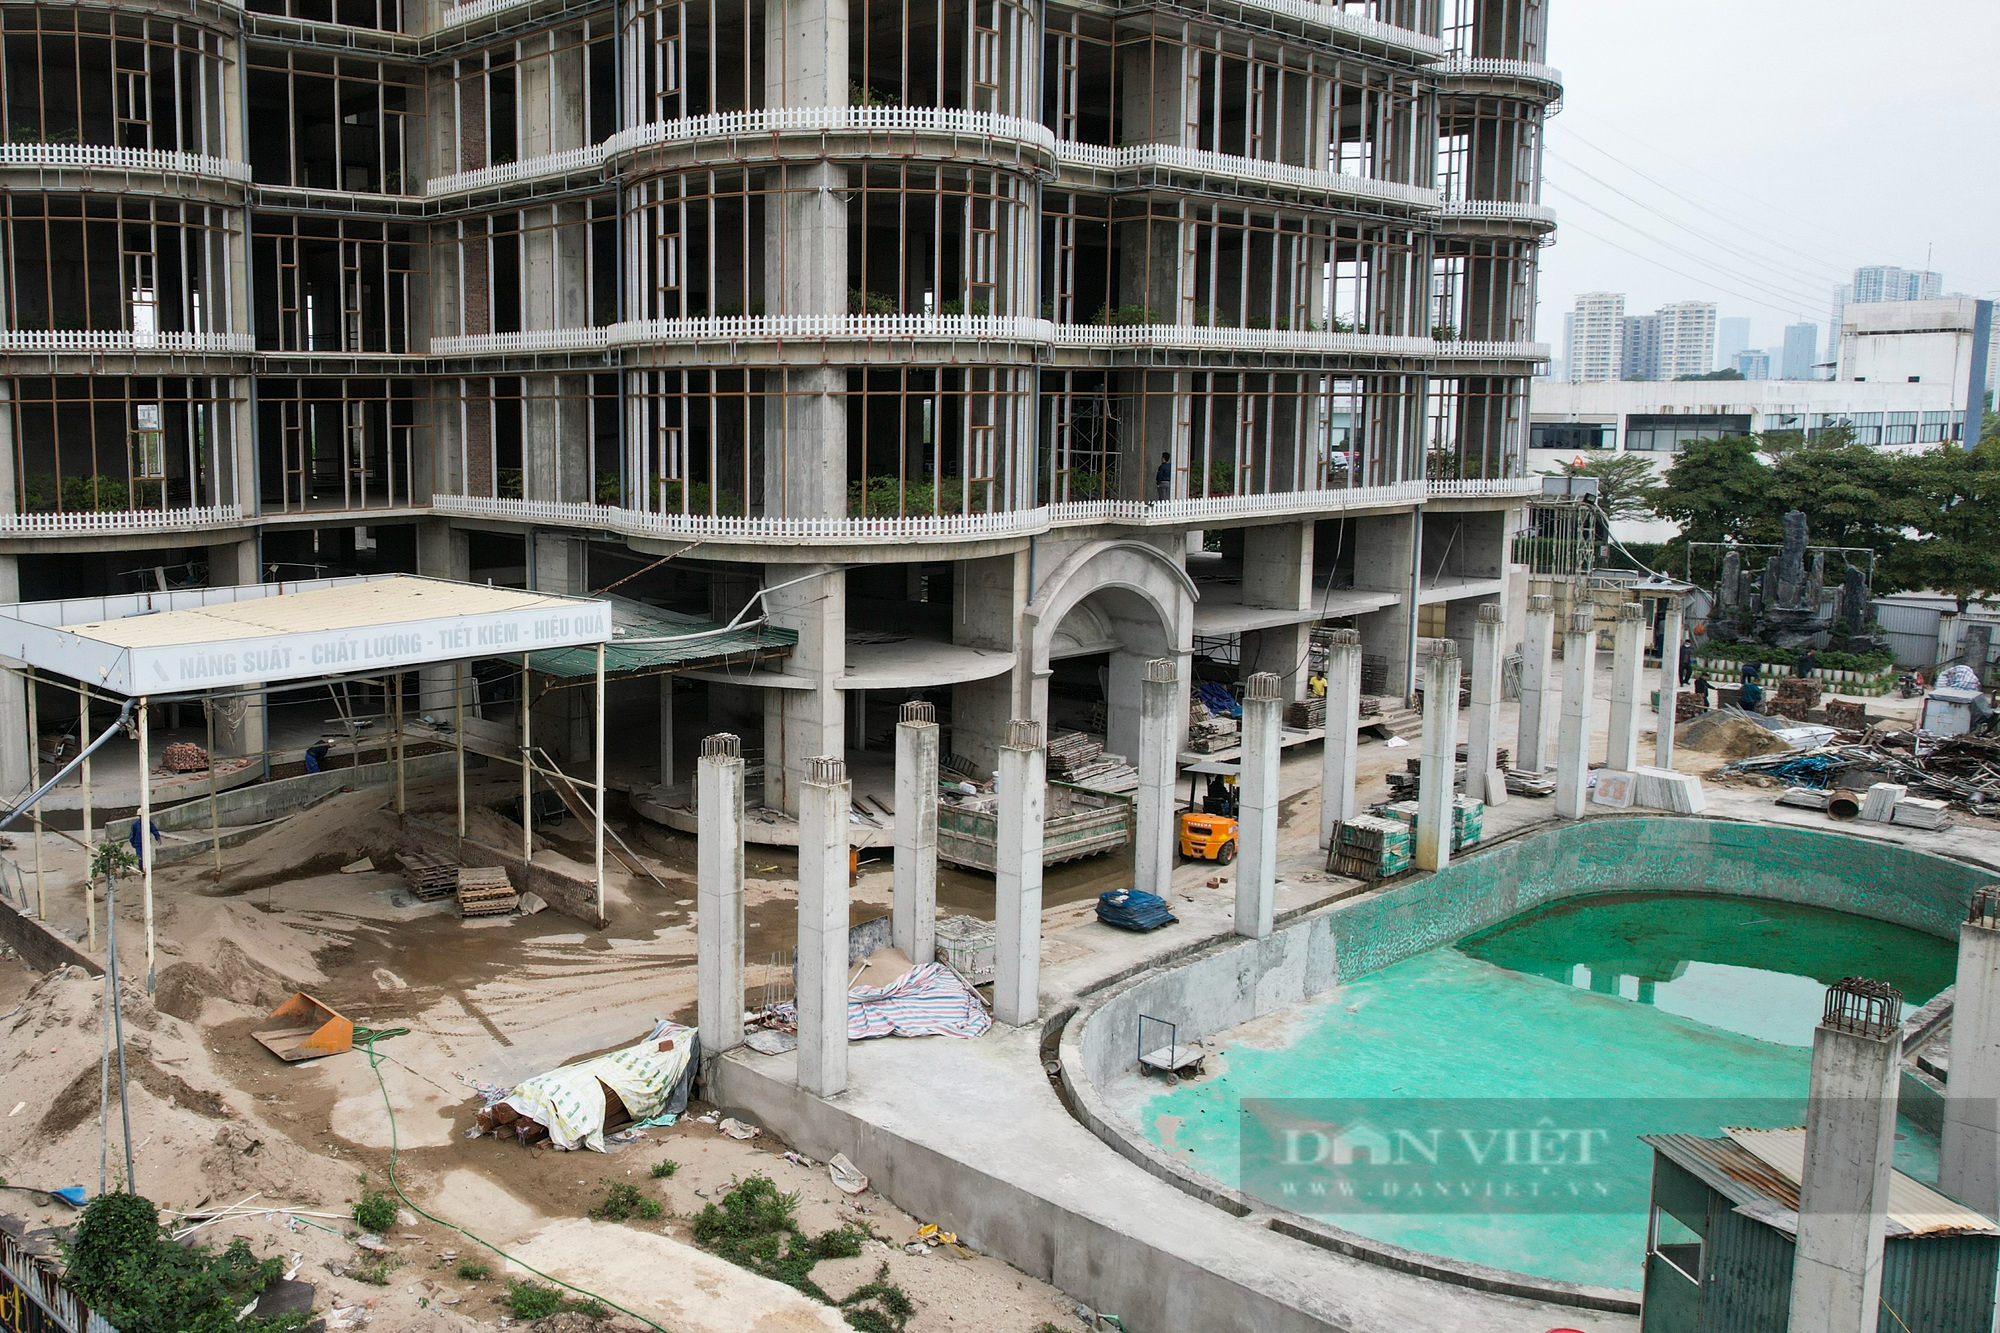 Cất nóc gần 3 năm, một dự án cao 45 tầng tại Hà Nội vẫn chưa thể đưa vào sử dụng - Ảnh 4.